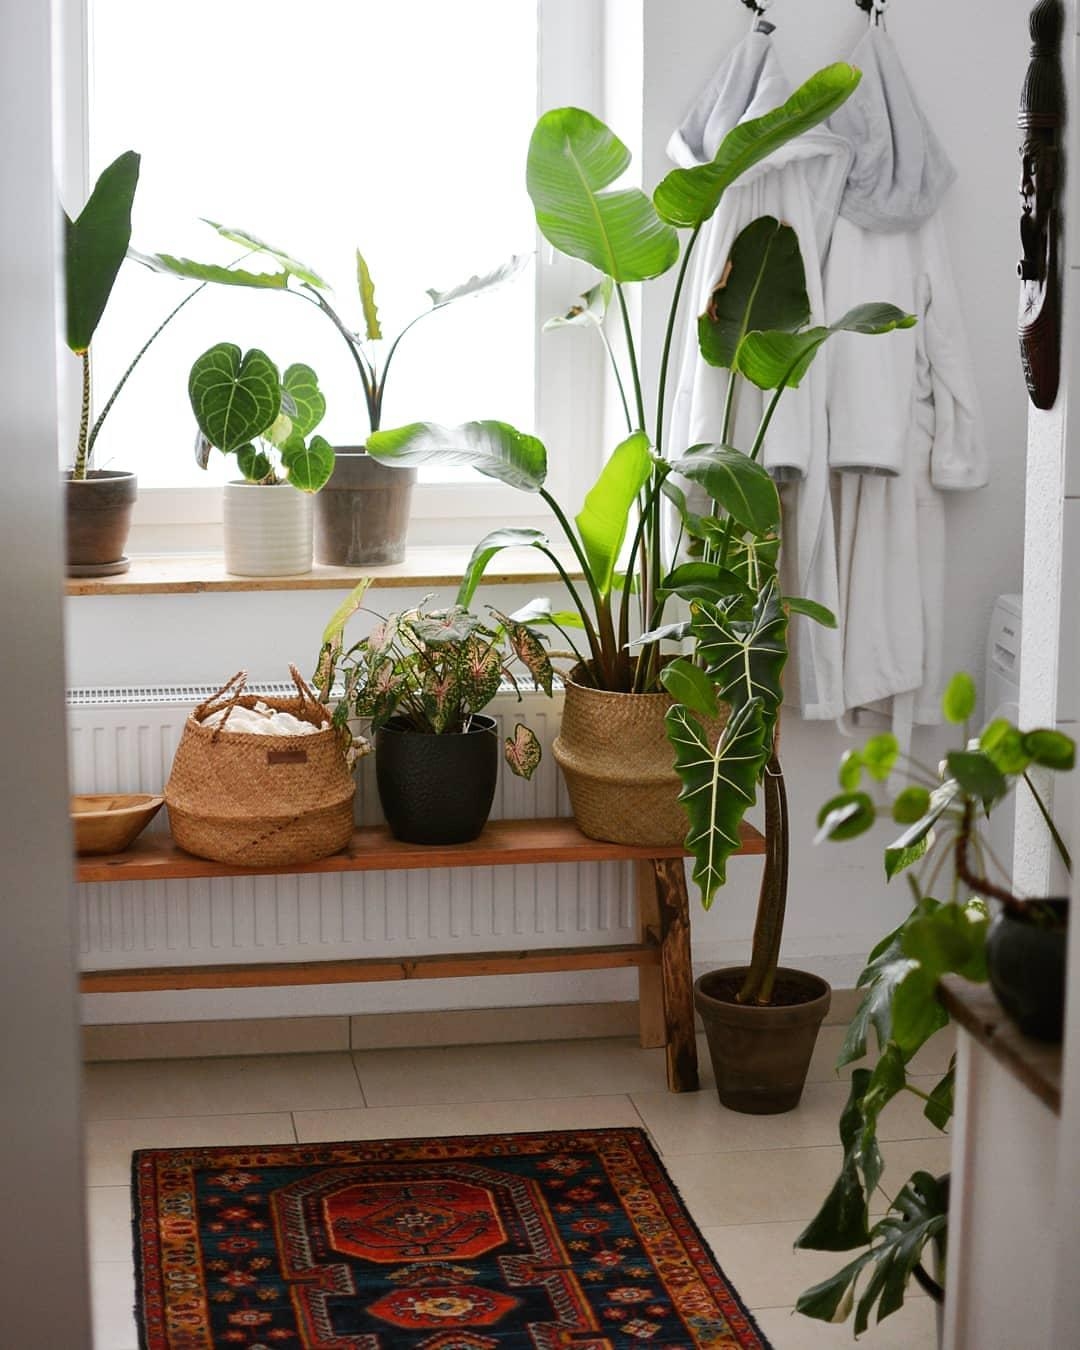 Unser Badezimmer ist unser ganz privater, kleiner Dschungel. 🐒🌴#pflanzenliebe #urbanjungle